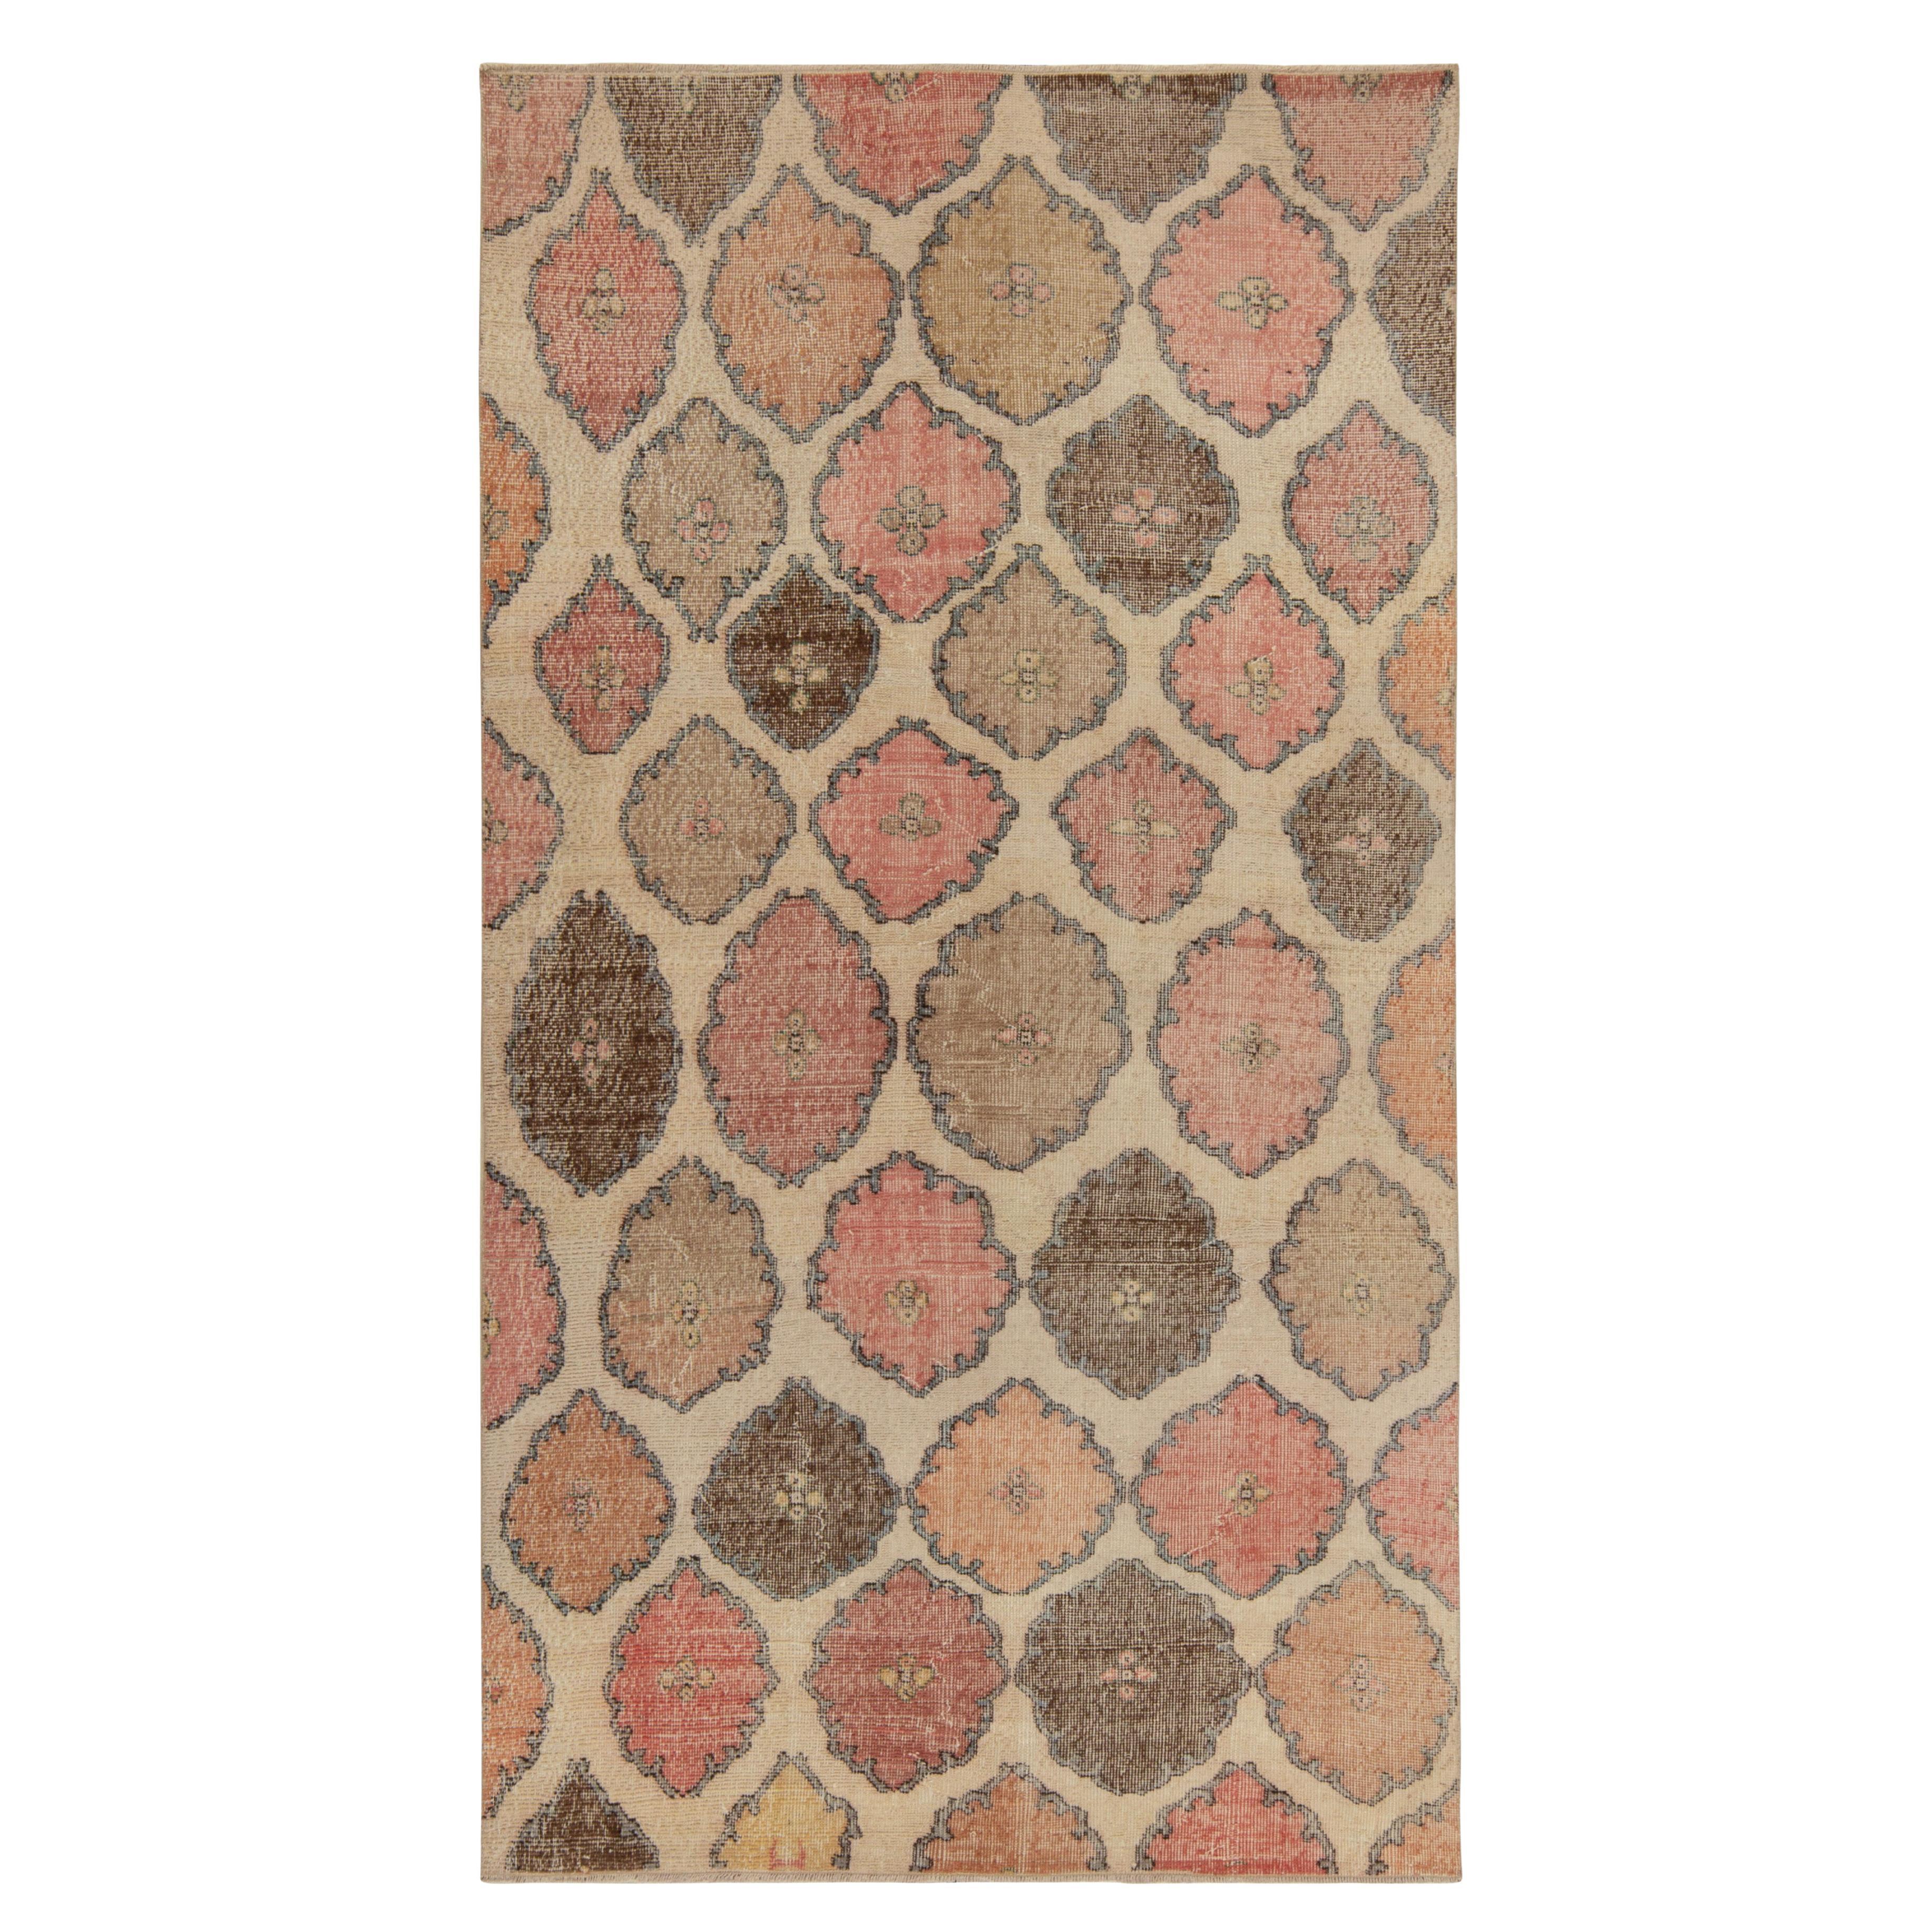 1960s Vintage Distressed Rug in Pink and Brown Geometric Pattern by Rug & Kilim